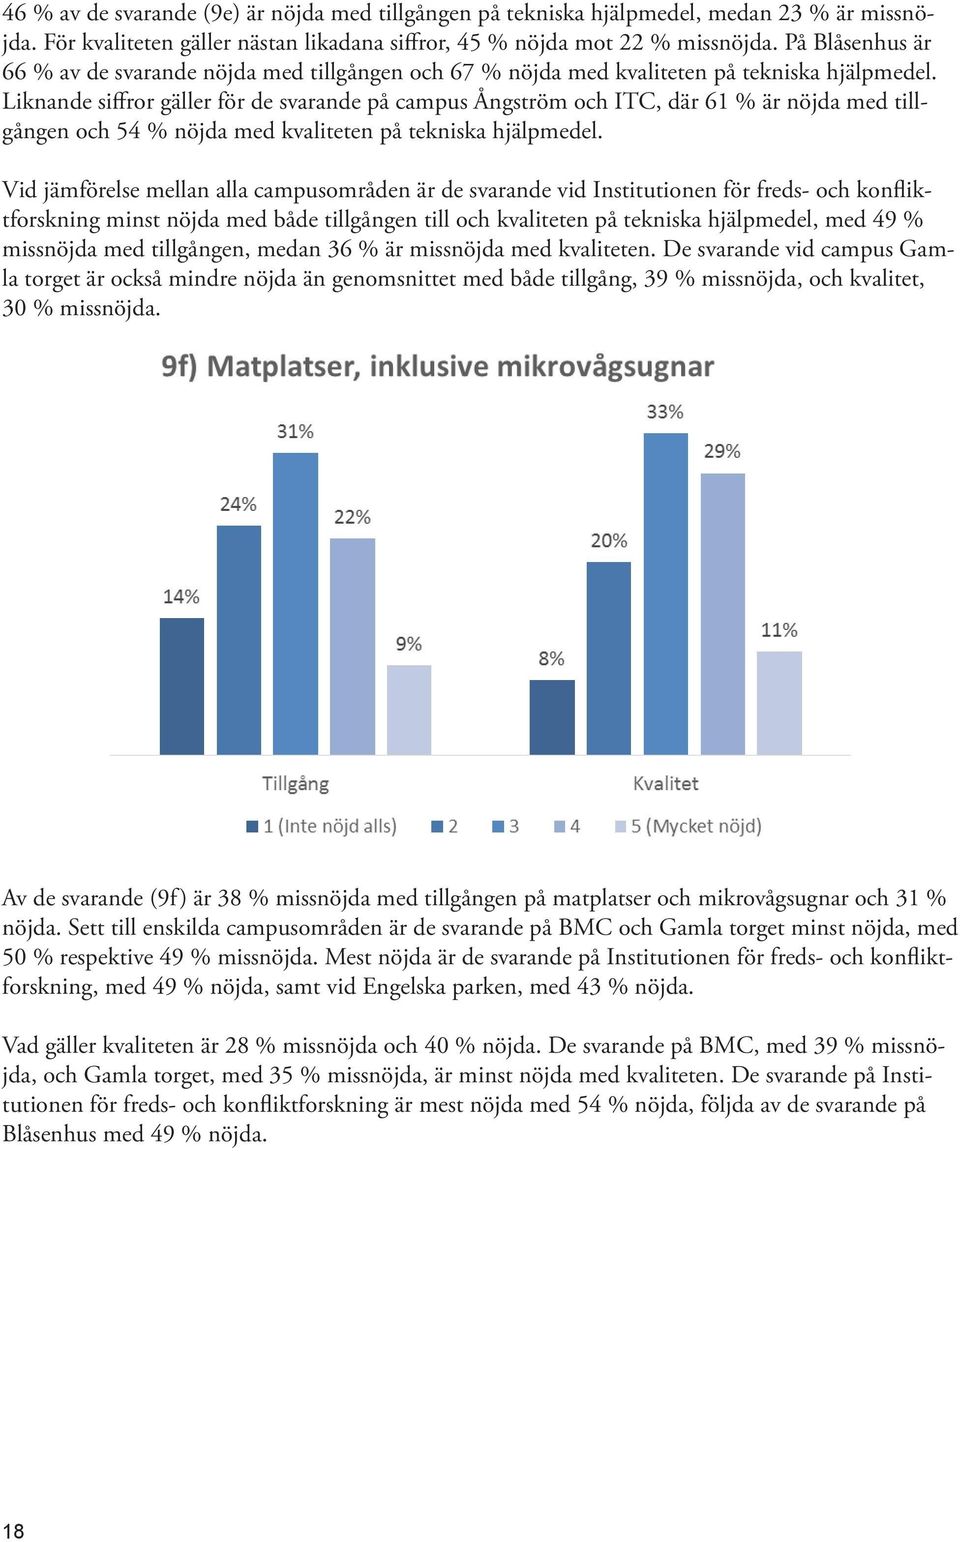 Liknande siffror gäller för de svarande på campus Ångström och ITC, där 61 % är nöjda med tillgången och 54 % nöjda med kvaliteten på tekniska hjälpmedel.